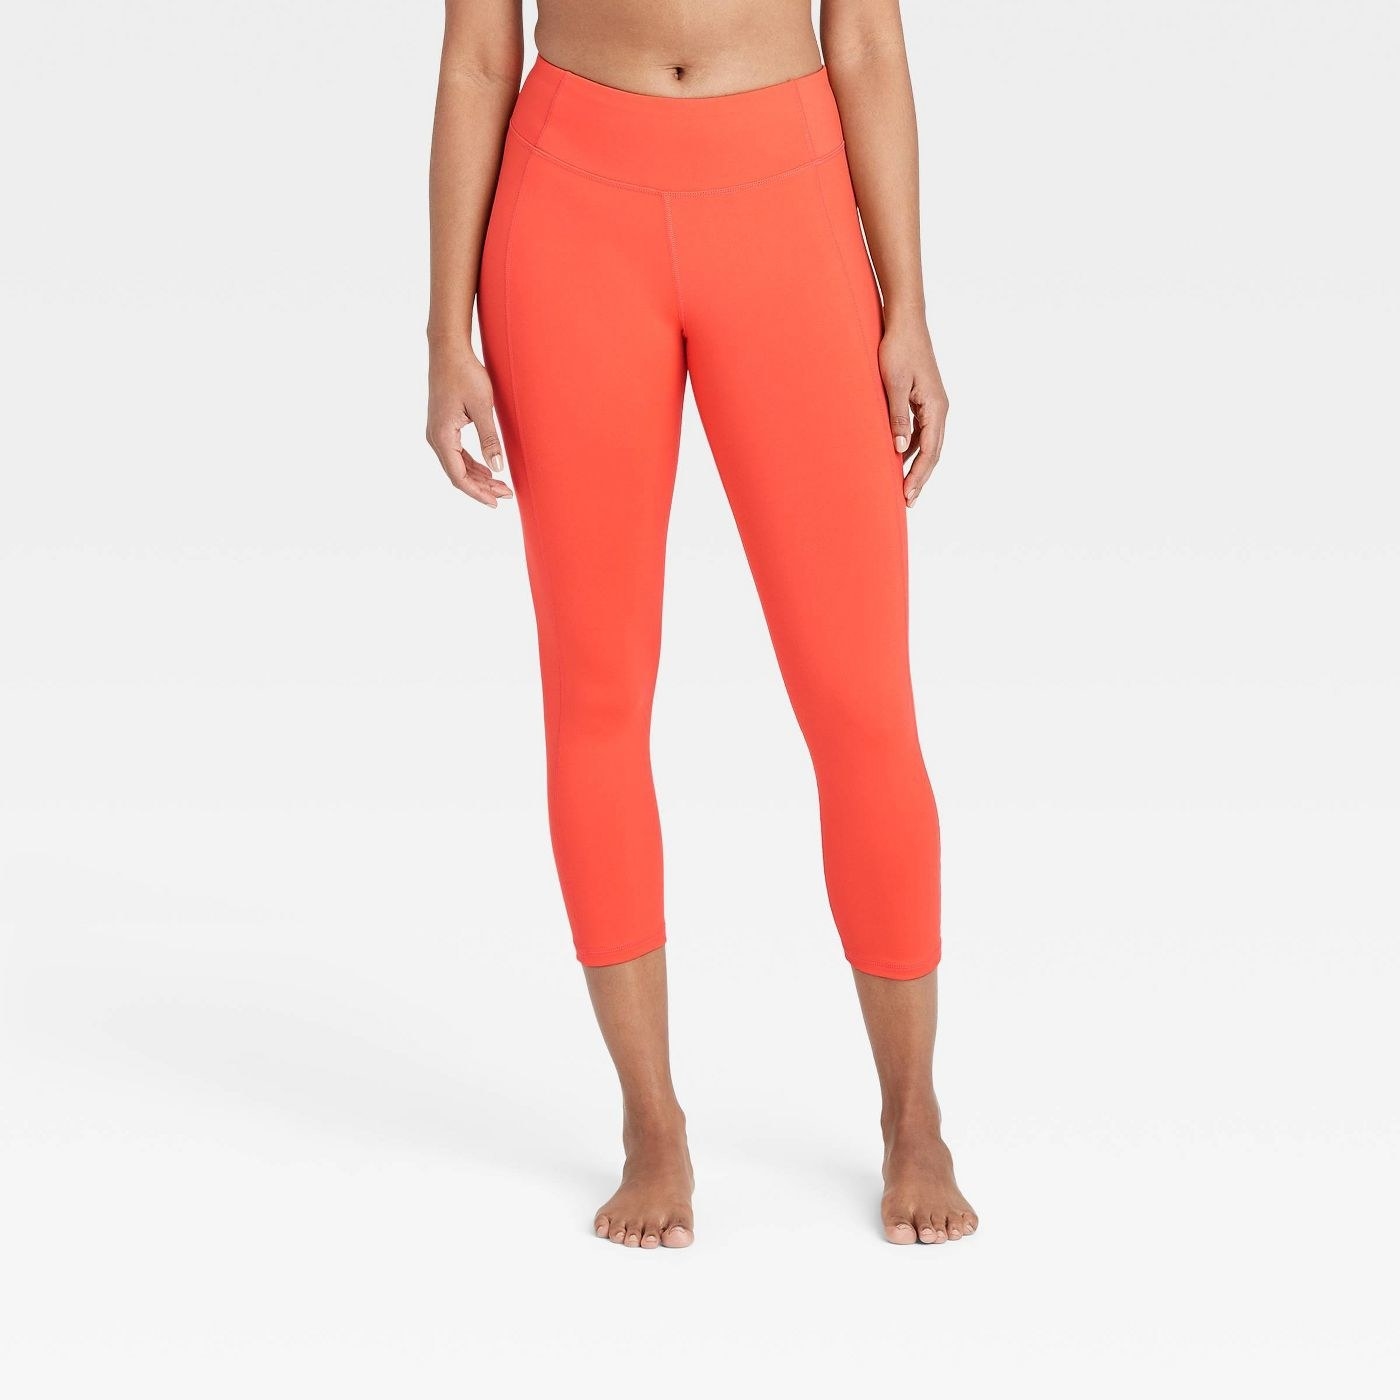 A pair of bright orange leggings